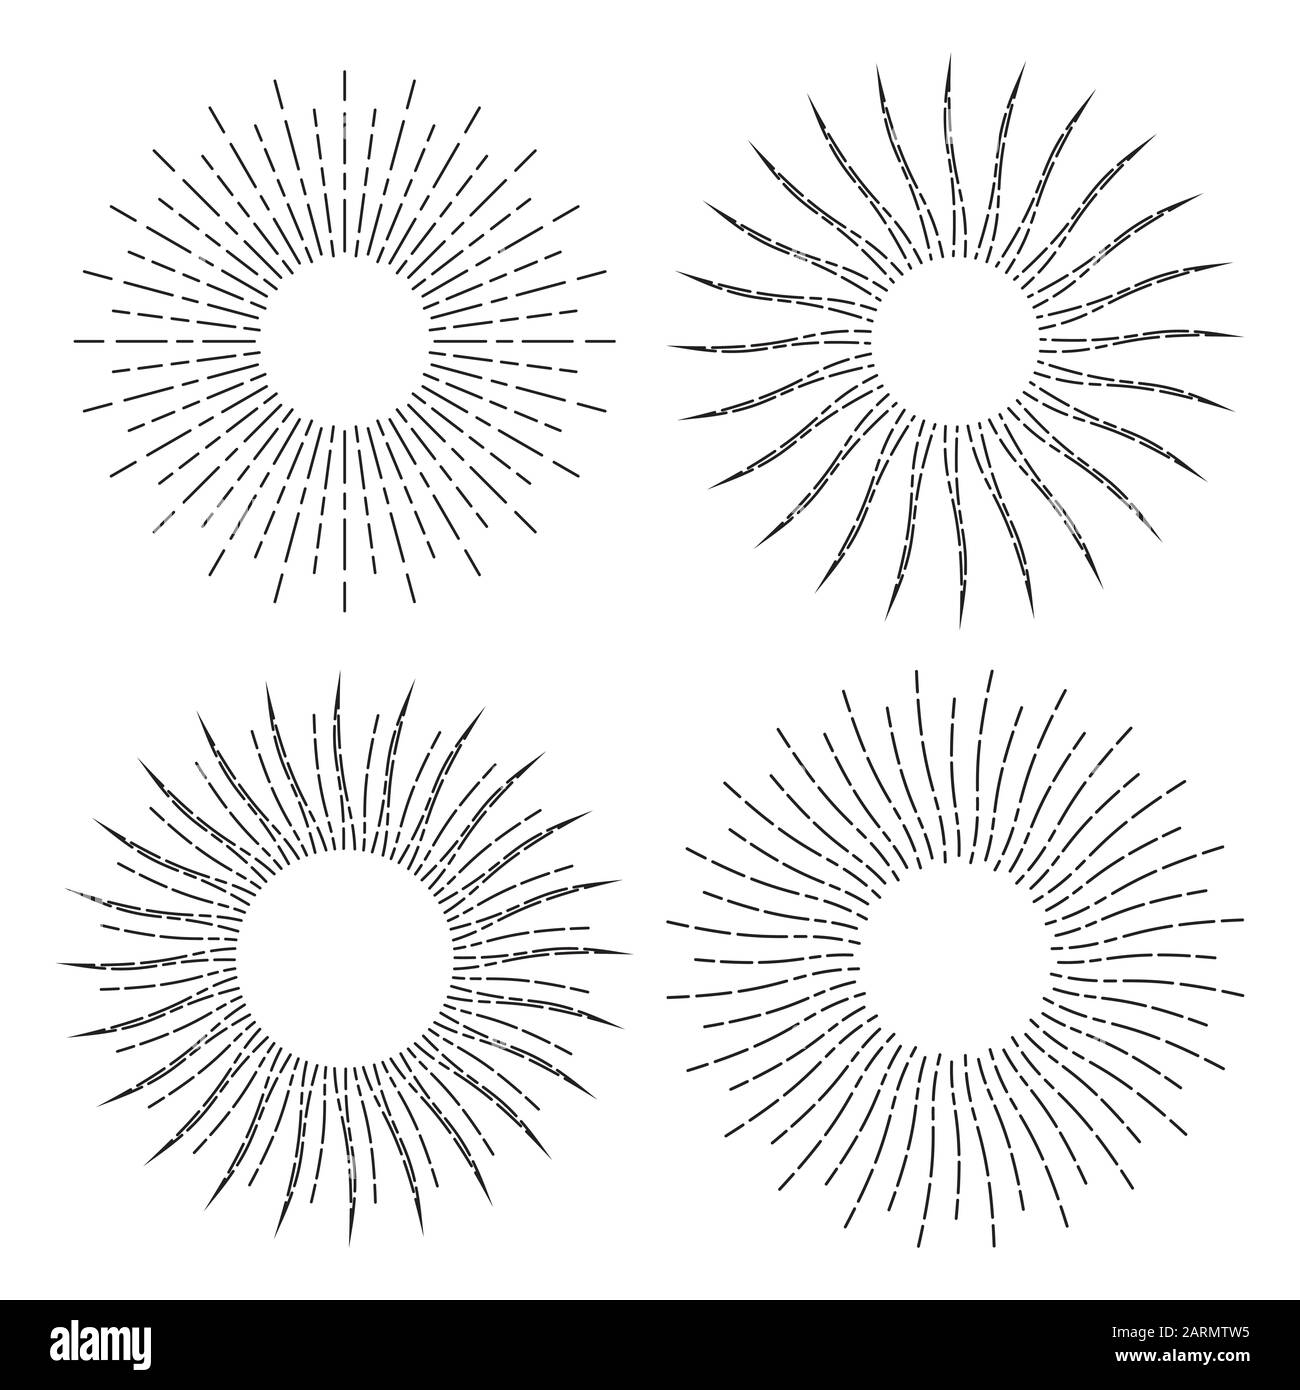 Satz von retro-stilisierten Sonnensymbolen. Sonnenbranne isoliert auf weißem Hintergrund. Lineare Zeichnungen von Sonnenstrahlen im Vintage-Stil. Sonnenlichtsammlung Stock Vektor